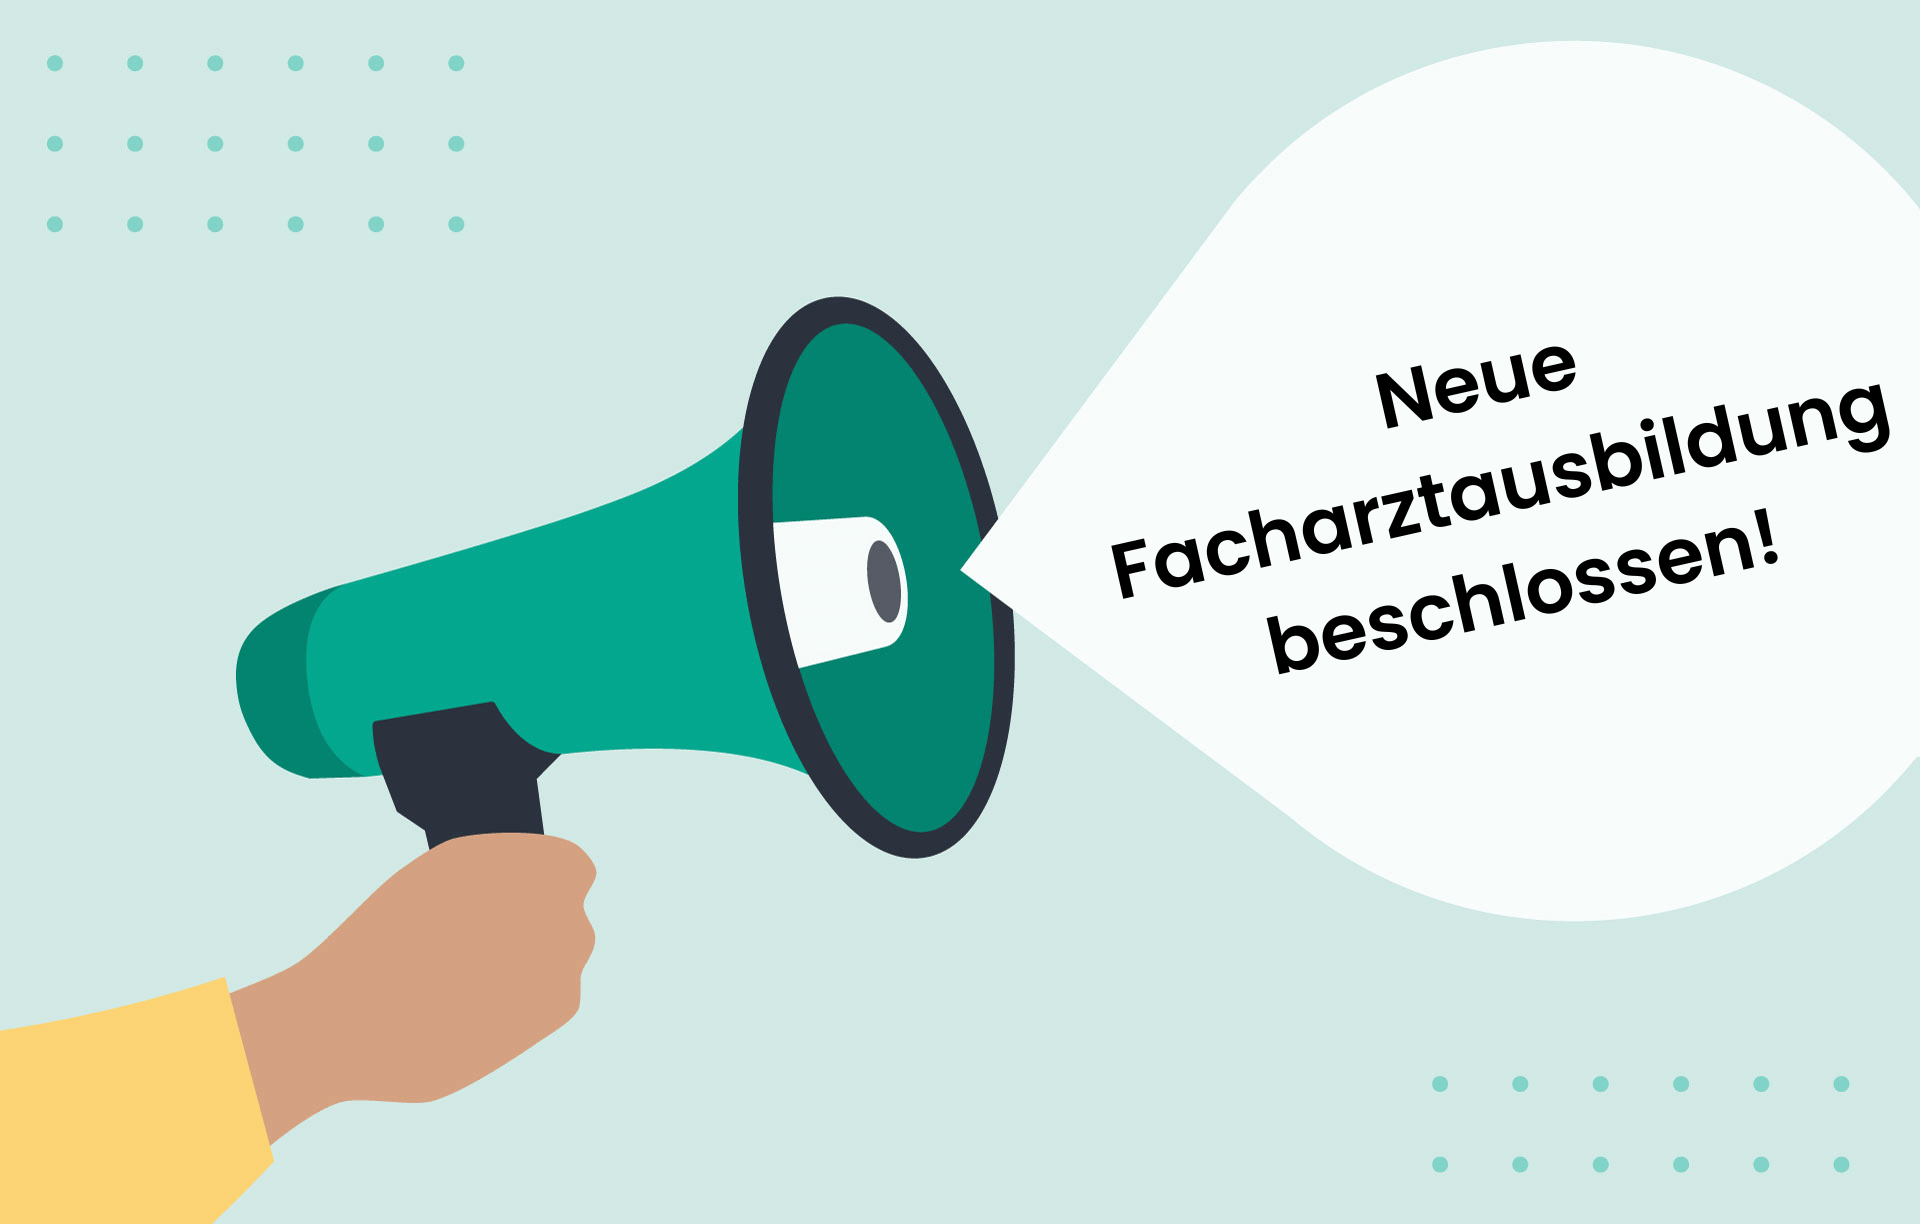 Megafon mit Sprechblase "neue Facharztausbildung beschlossen""